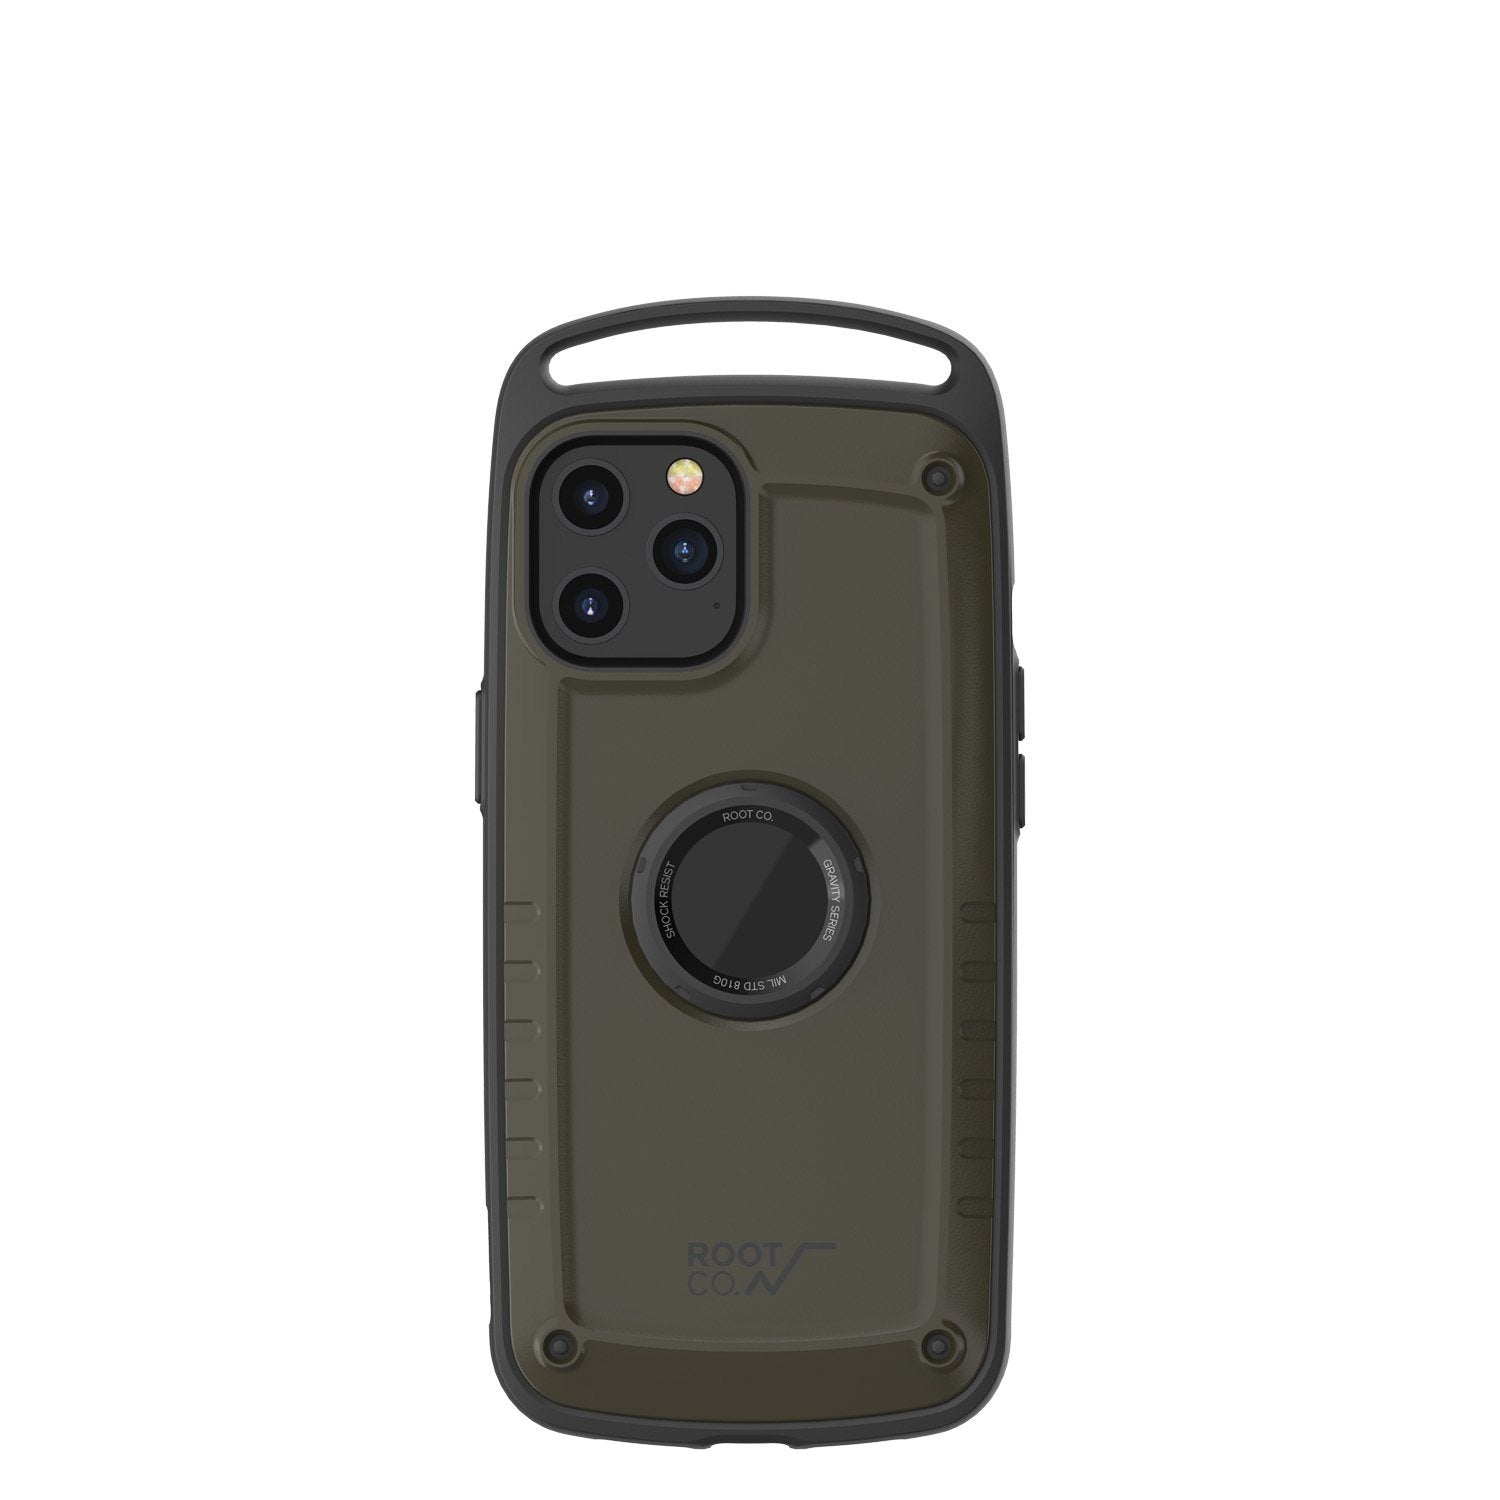 ROOT CO. Gravity Shock Resist Case Pro for iPhone 12 Pro Max 6.7"(2020), Matte Khaki Default ROOT CO. 